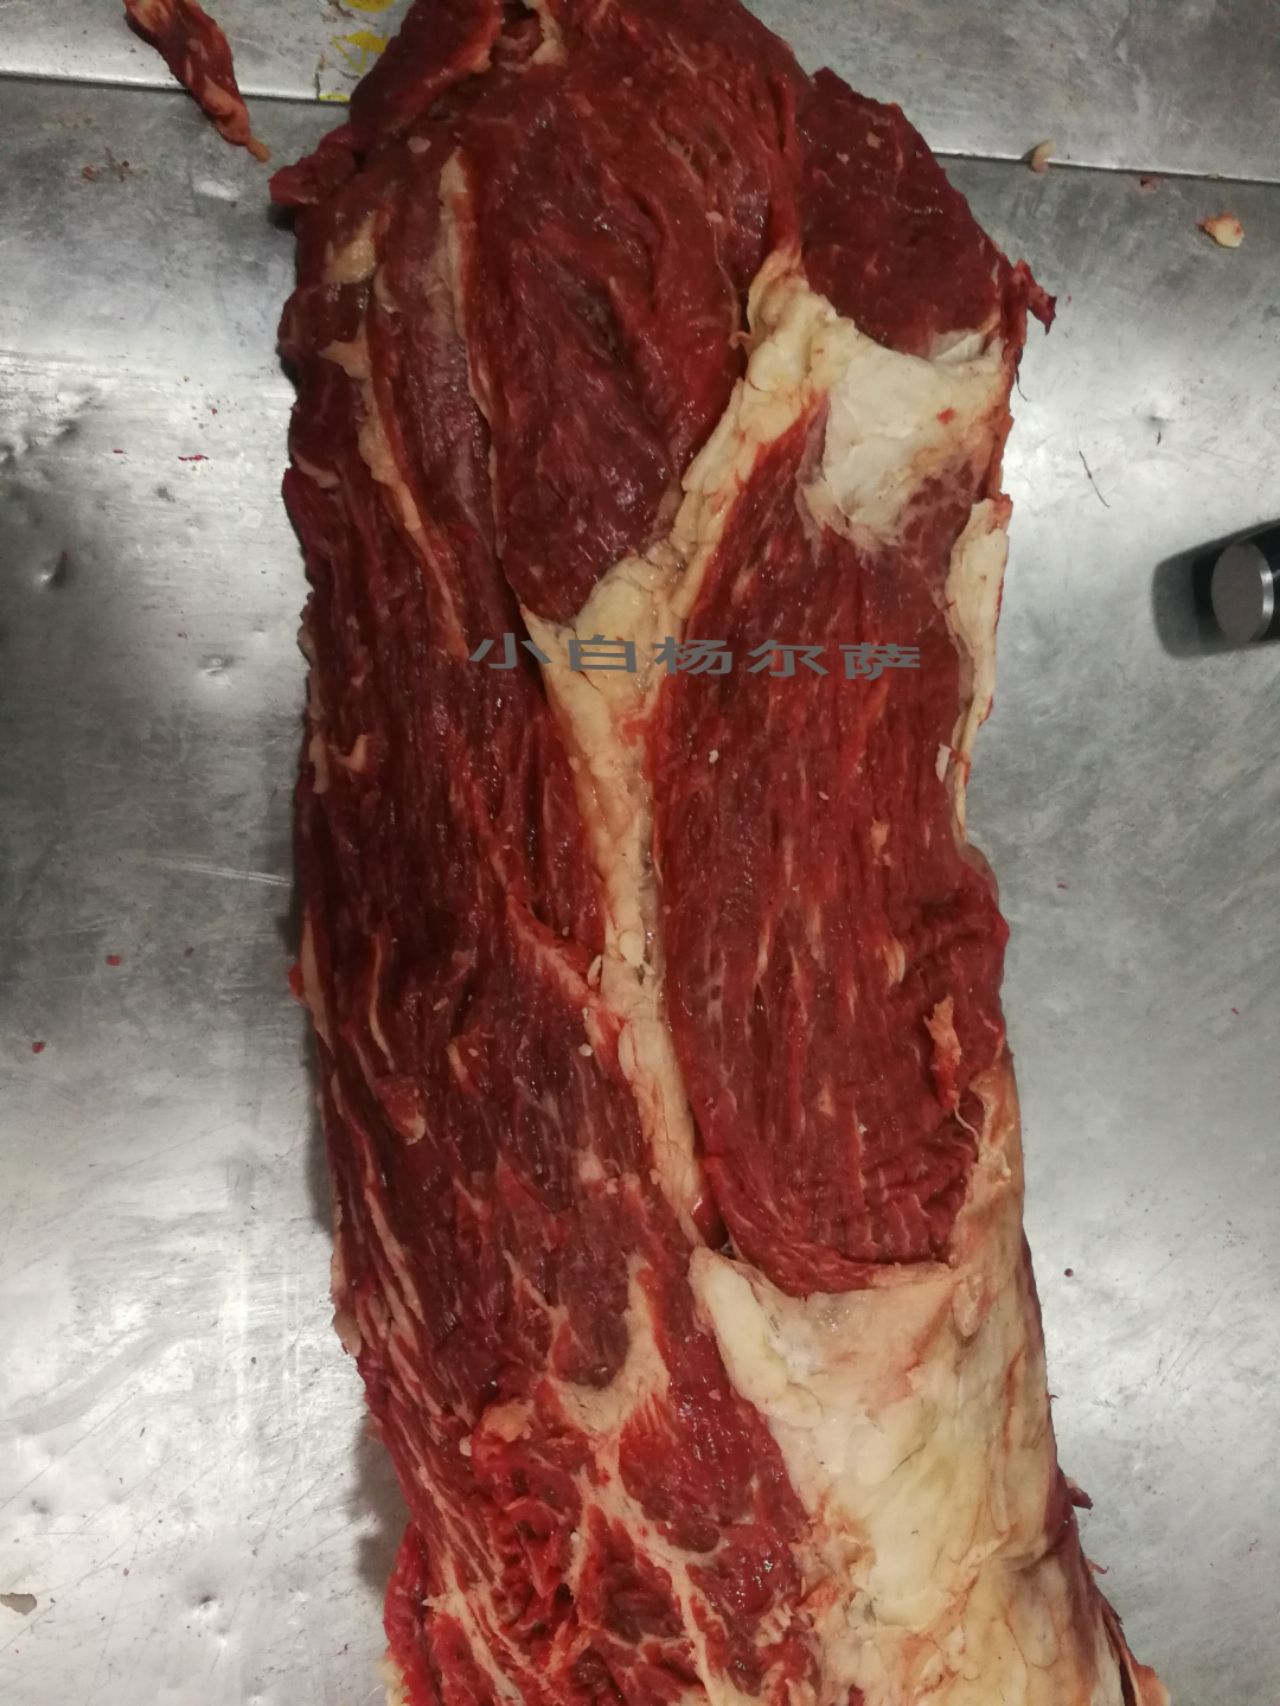 牛肉 牛里脊肉 新疆塔城市 50元一斤